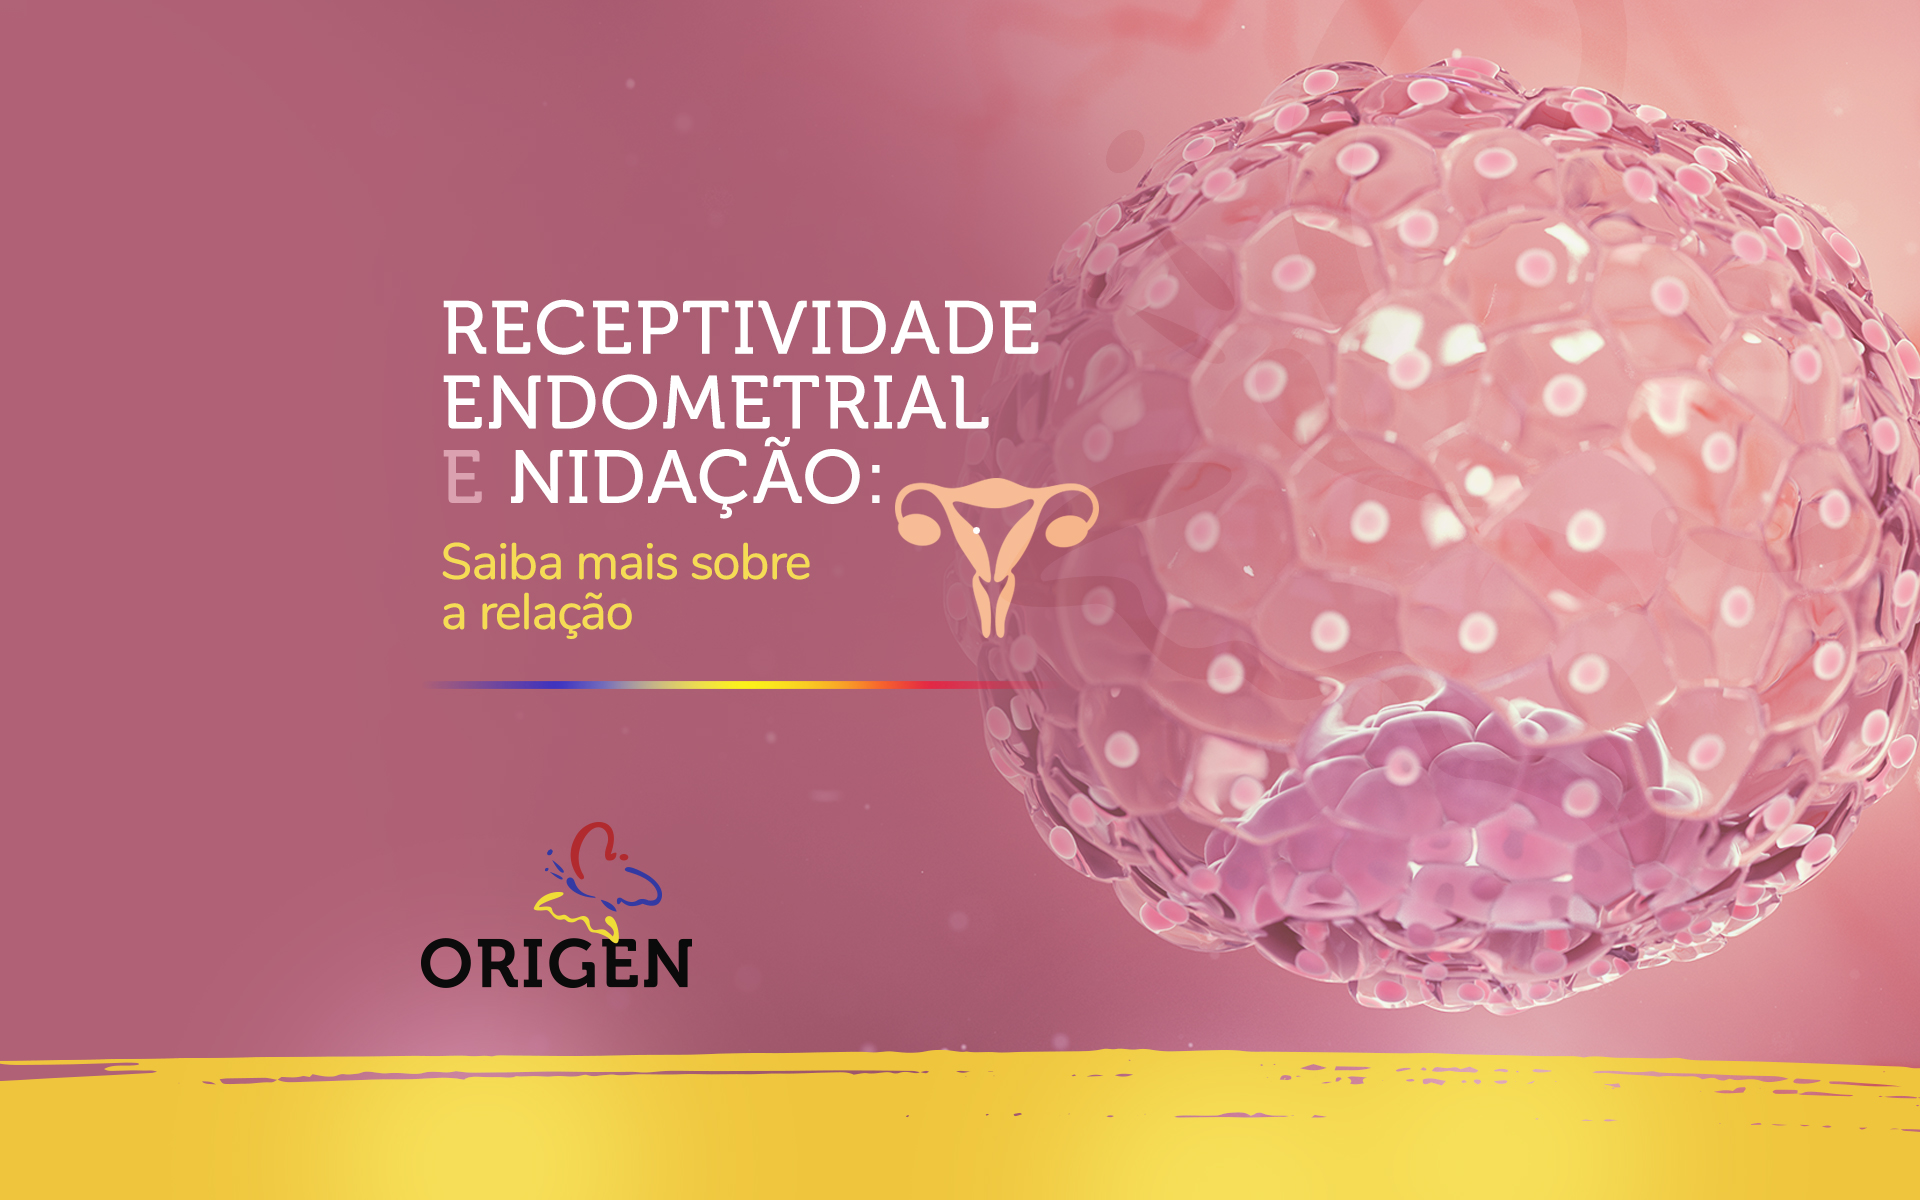 Receptividade endometrial e nidação: saiba mais sobre a relação